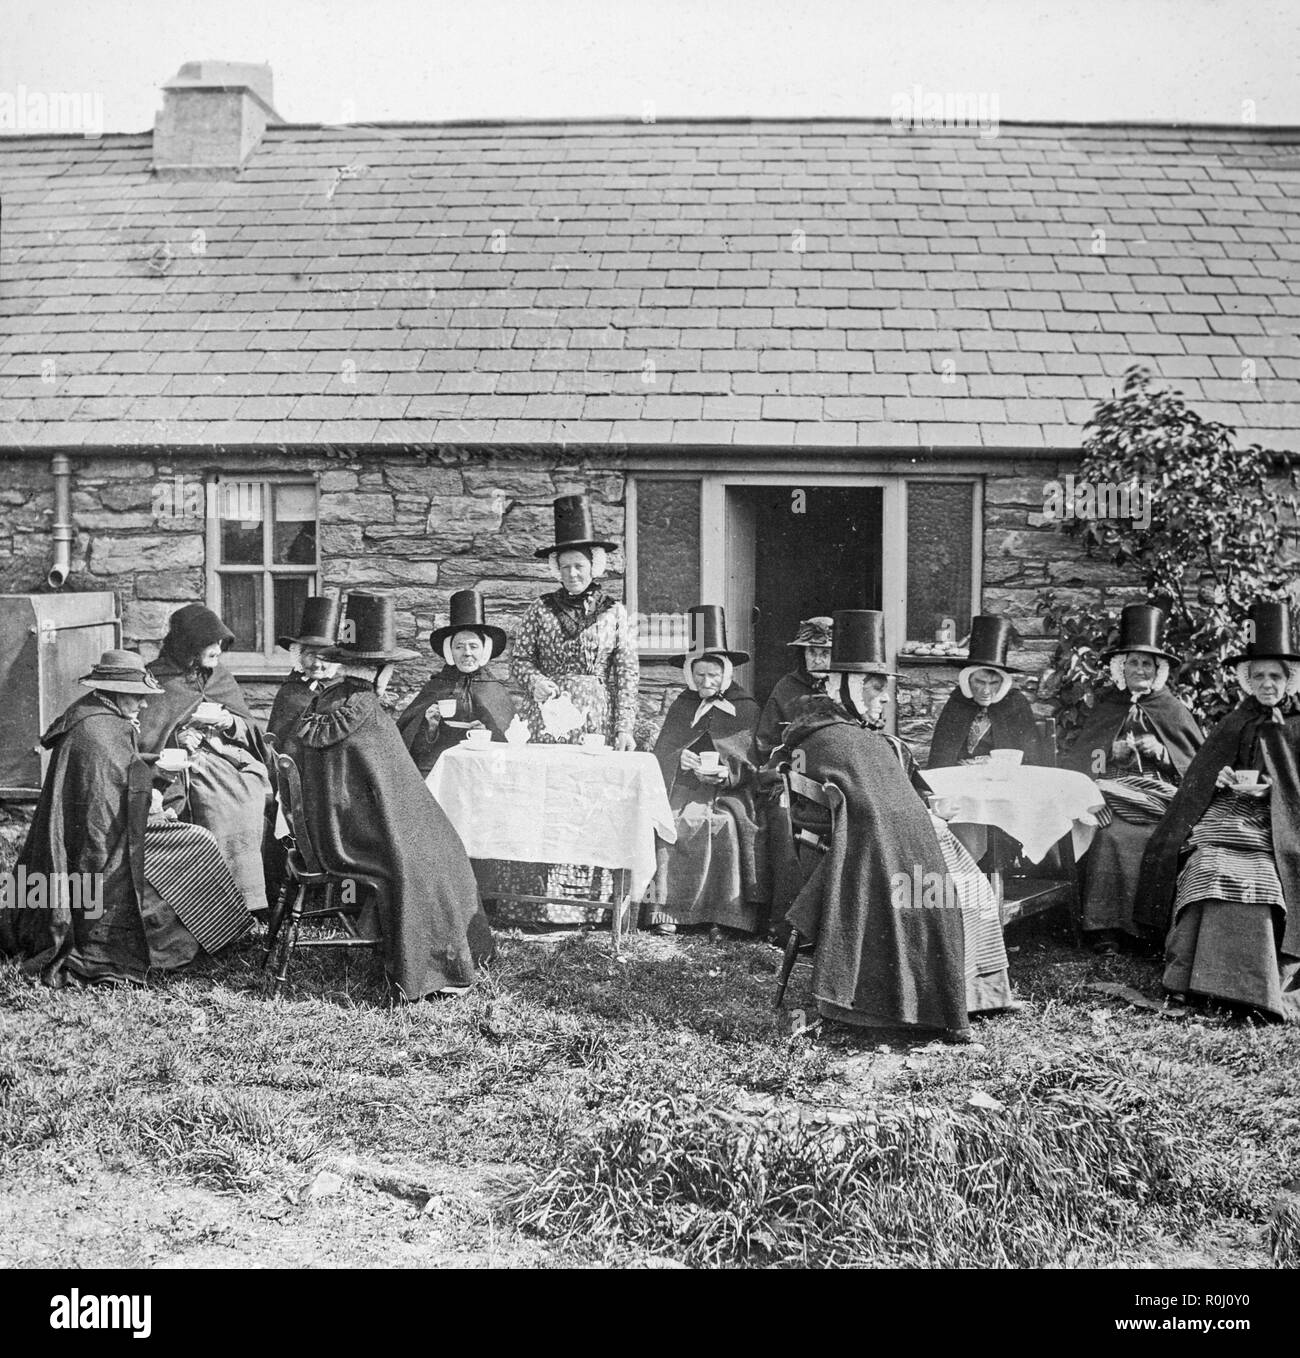 Alate Victorian vintage photographie noir et blanc, montrant un groupe de femmes habillées en costume traditionnel gallois, en dehors d'une petite maison. Certains boivent le thé, certains font de la couture. Le chapeau traditionnel Gallois est très bien illustré. Banque D'Images